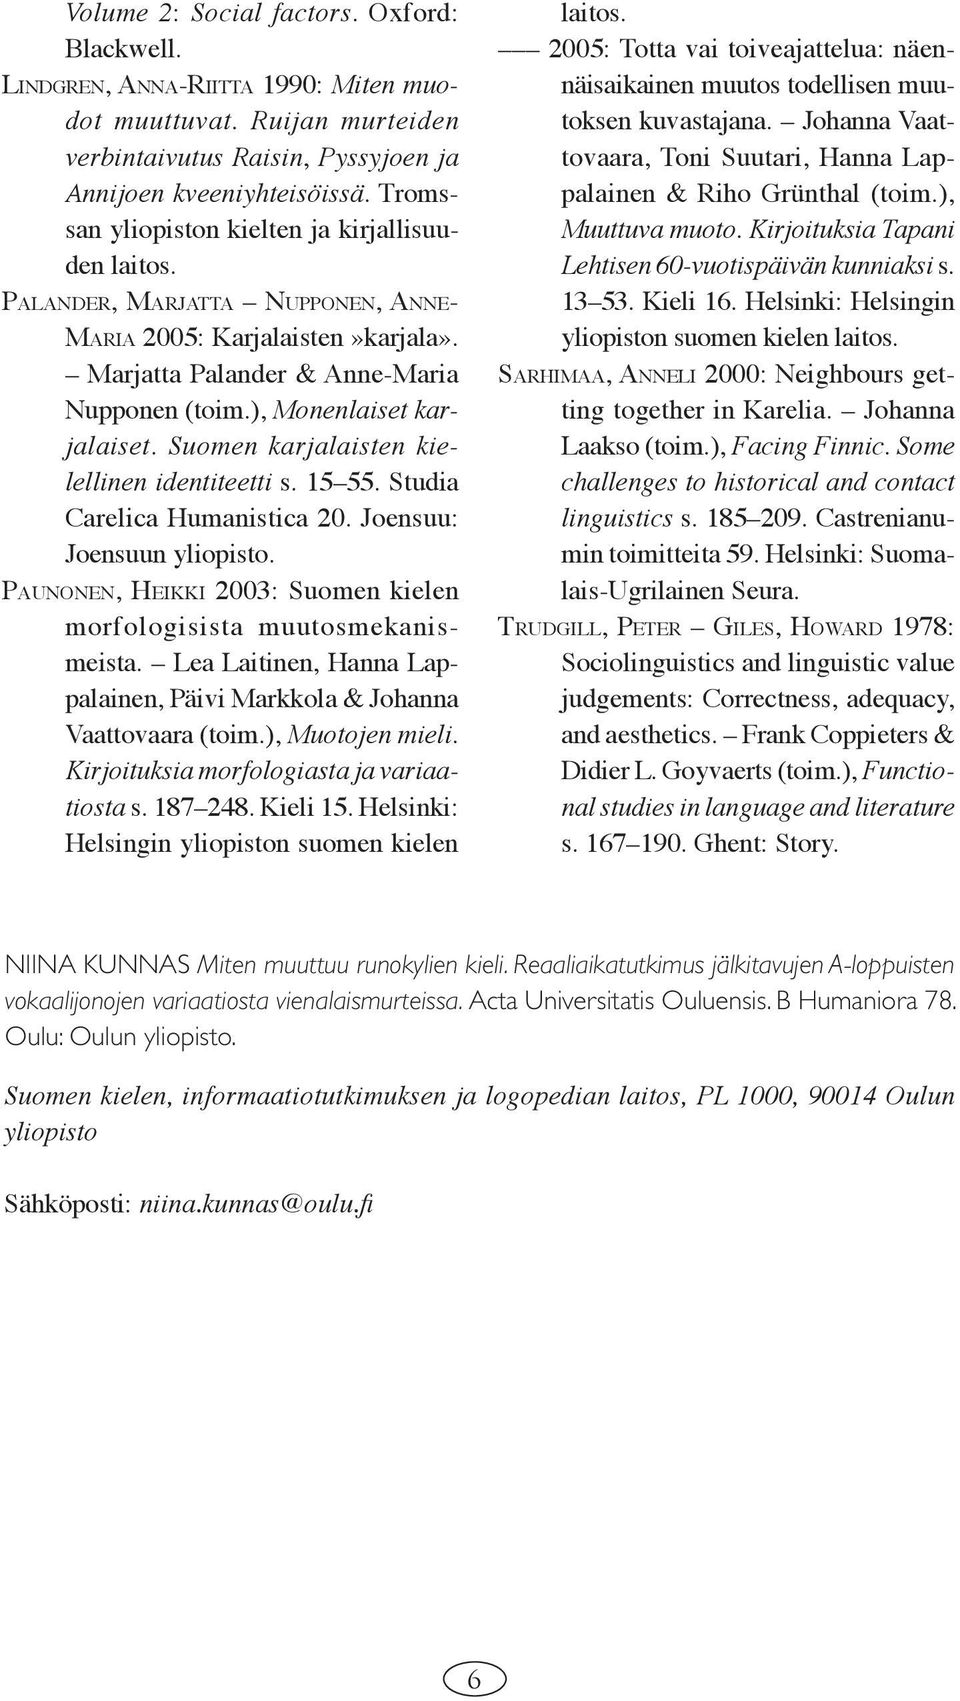 Suomen karjalaisten kielellinen identiteetti s. 15 55. Studia Carelica Humanistica 20. Joensuu: Joensuun yliopisto. PAUNONEN, HEIKKI 2003: Suomen kielen morfologisista muutosmekanismeista.